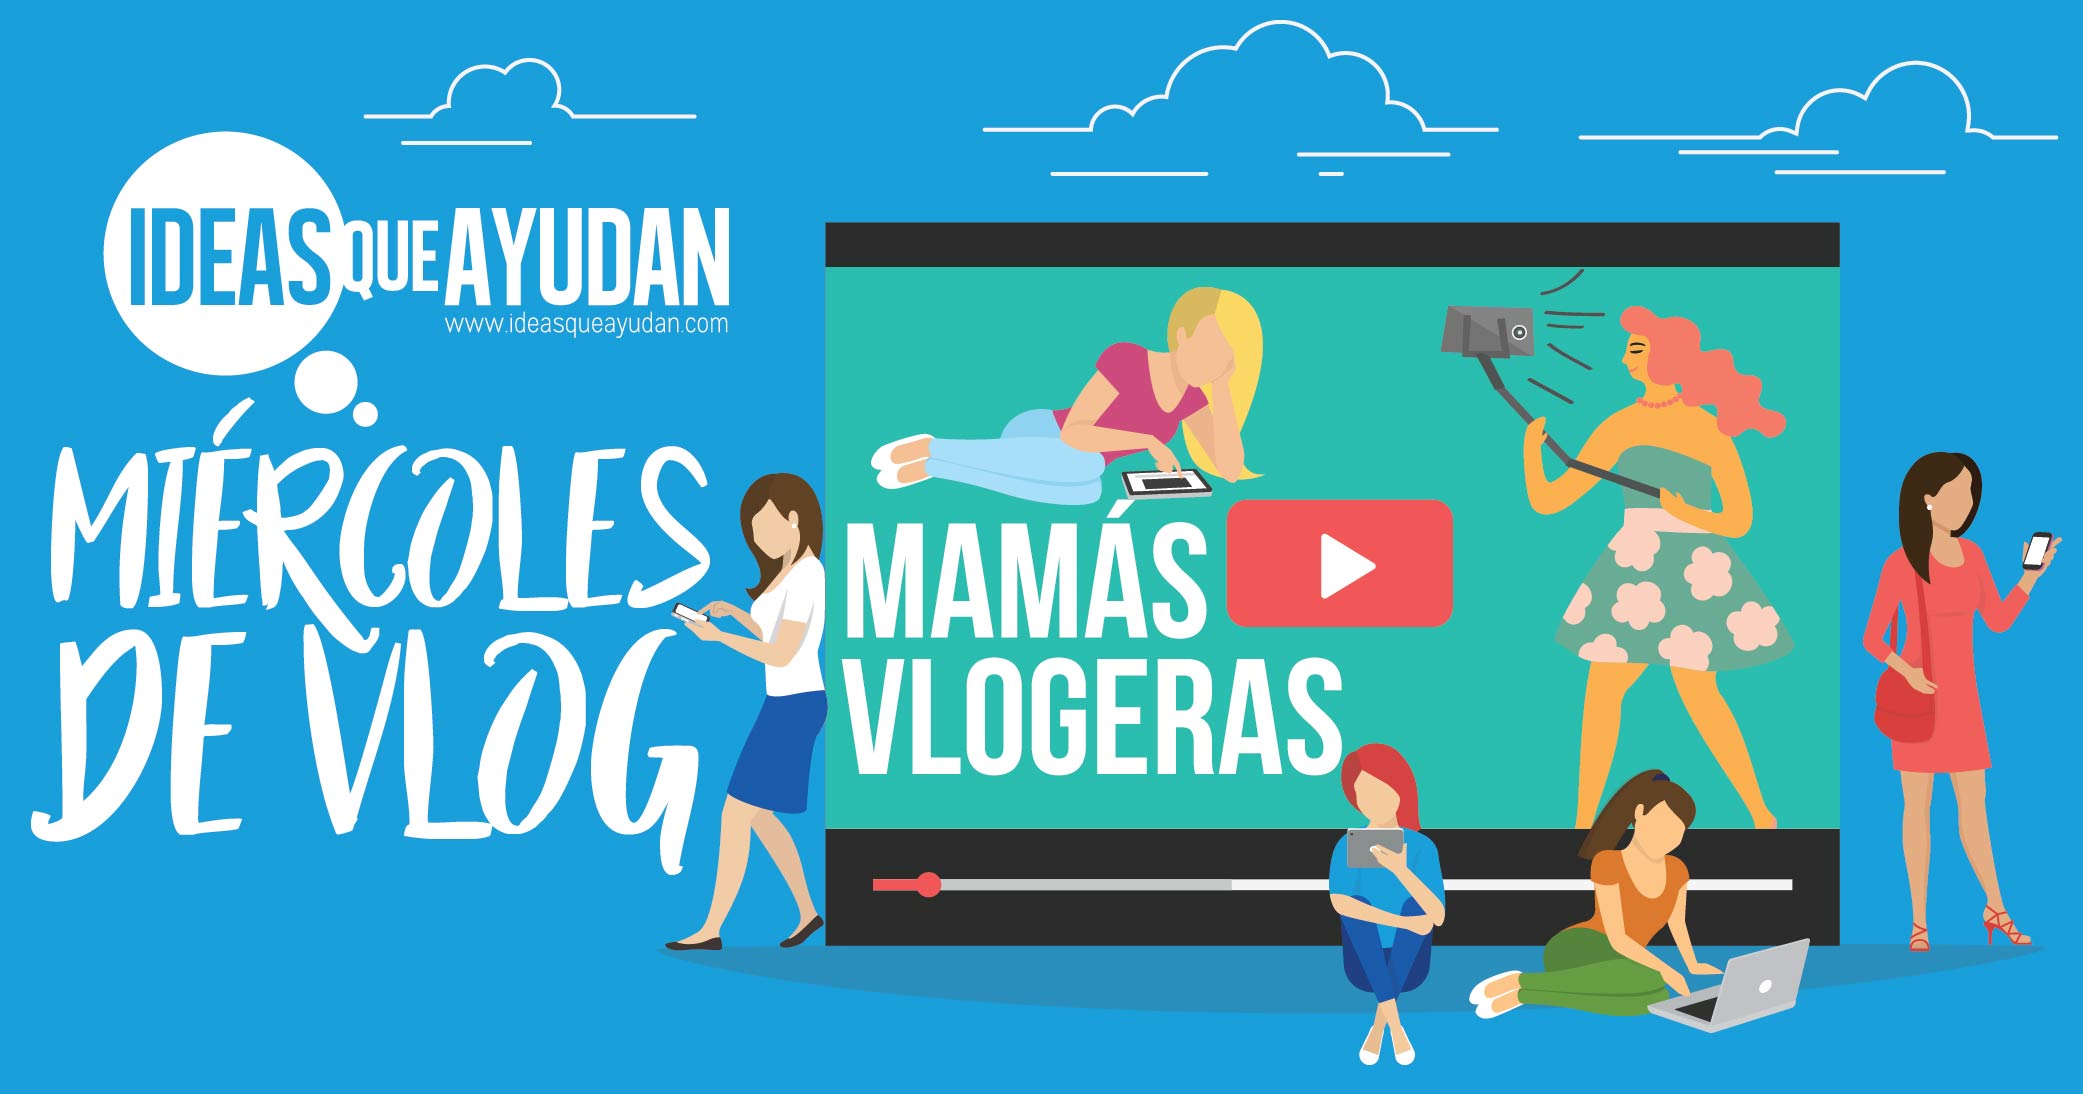 Miércoles de Vlog: Mamás Vlogeras